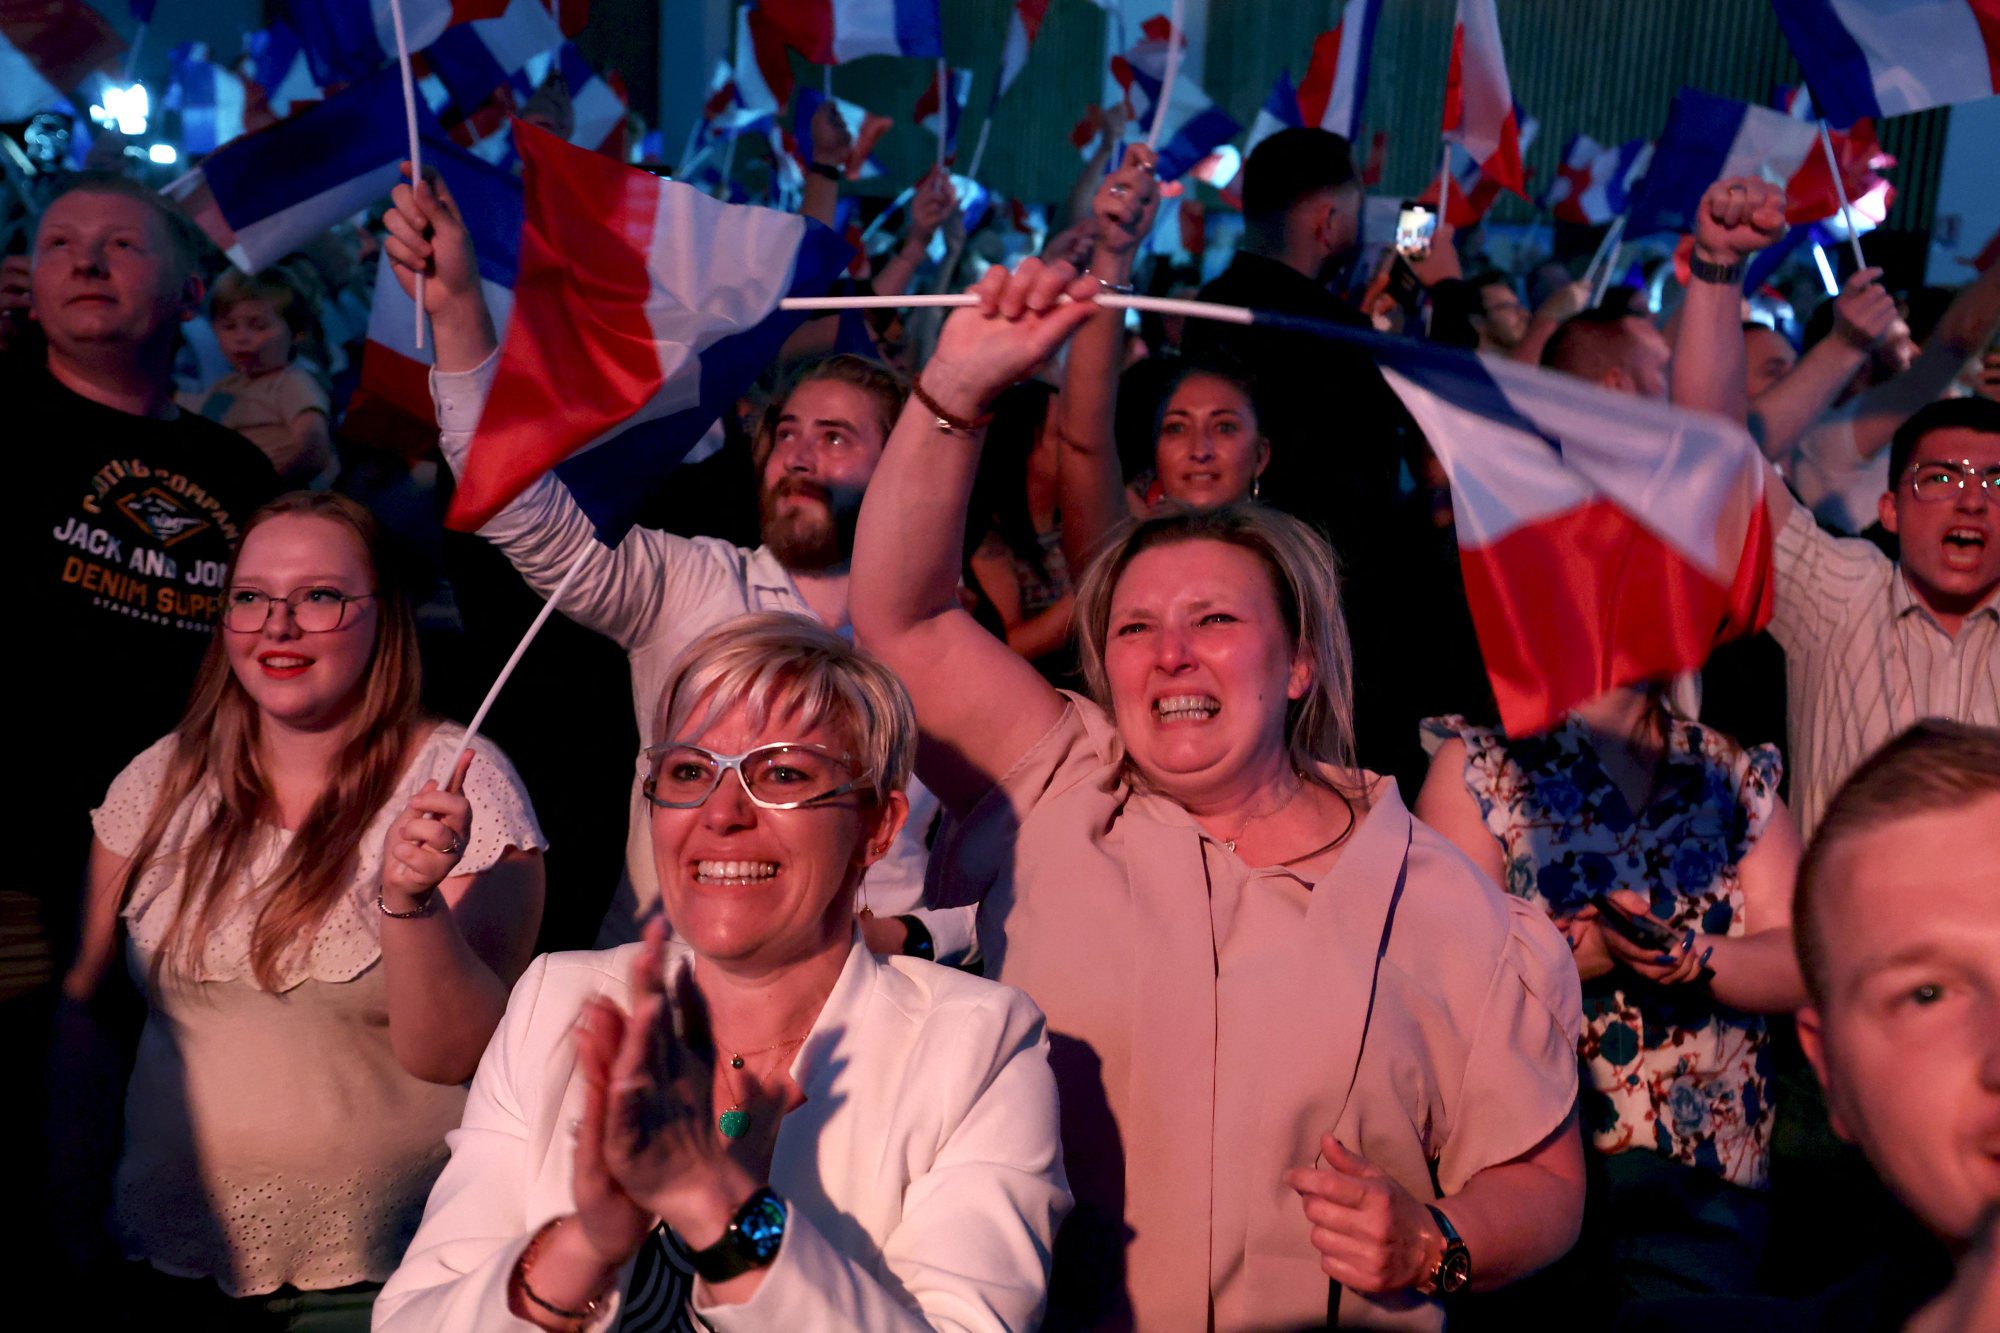 La extrema derecha francesa gana la primera vuelta de las elecciones y la alianza con Macron queda en tercera posición, según las encuestas